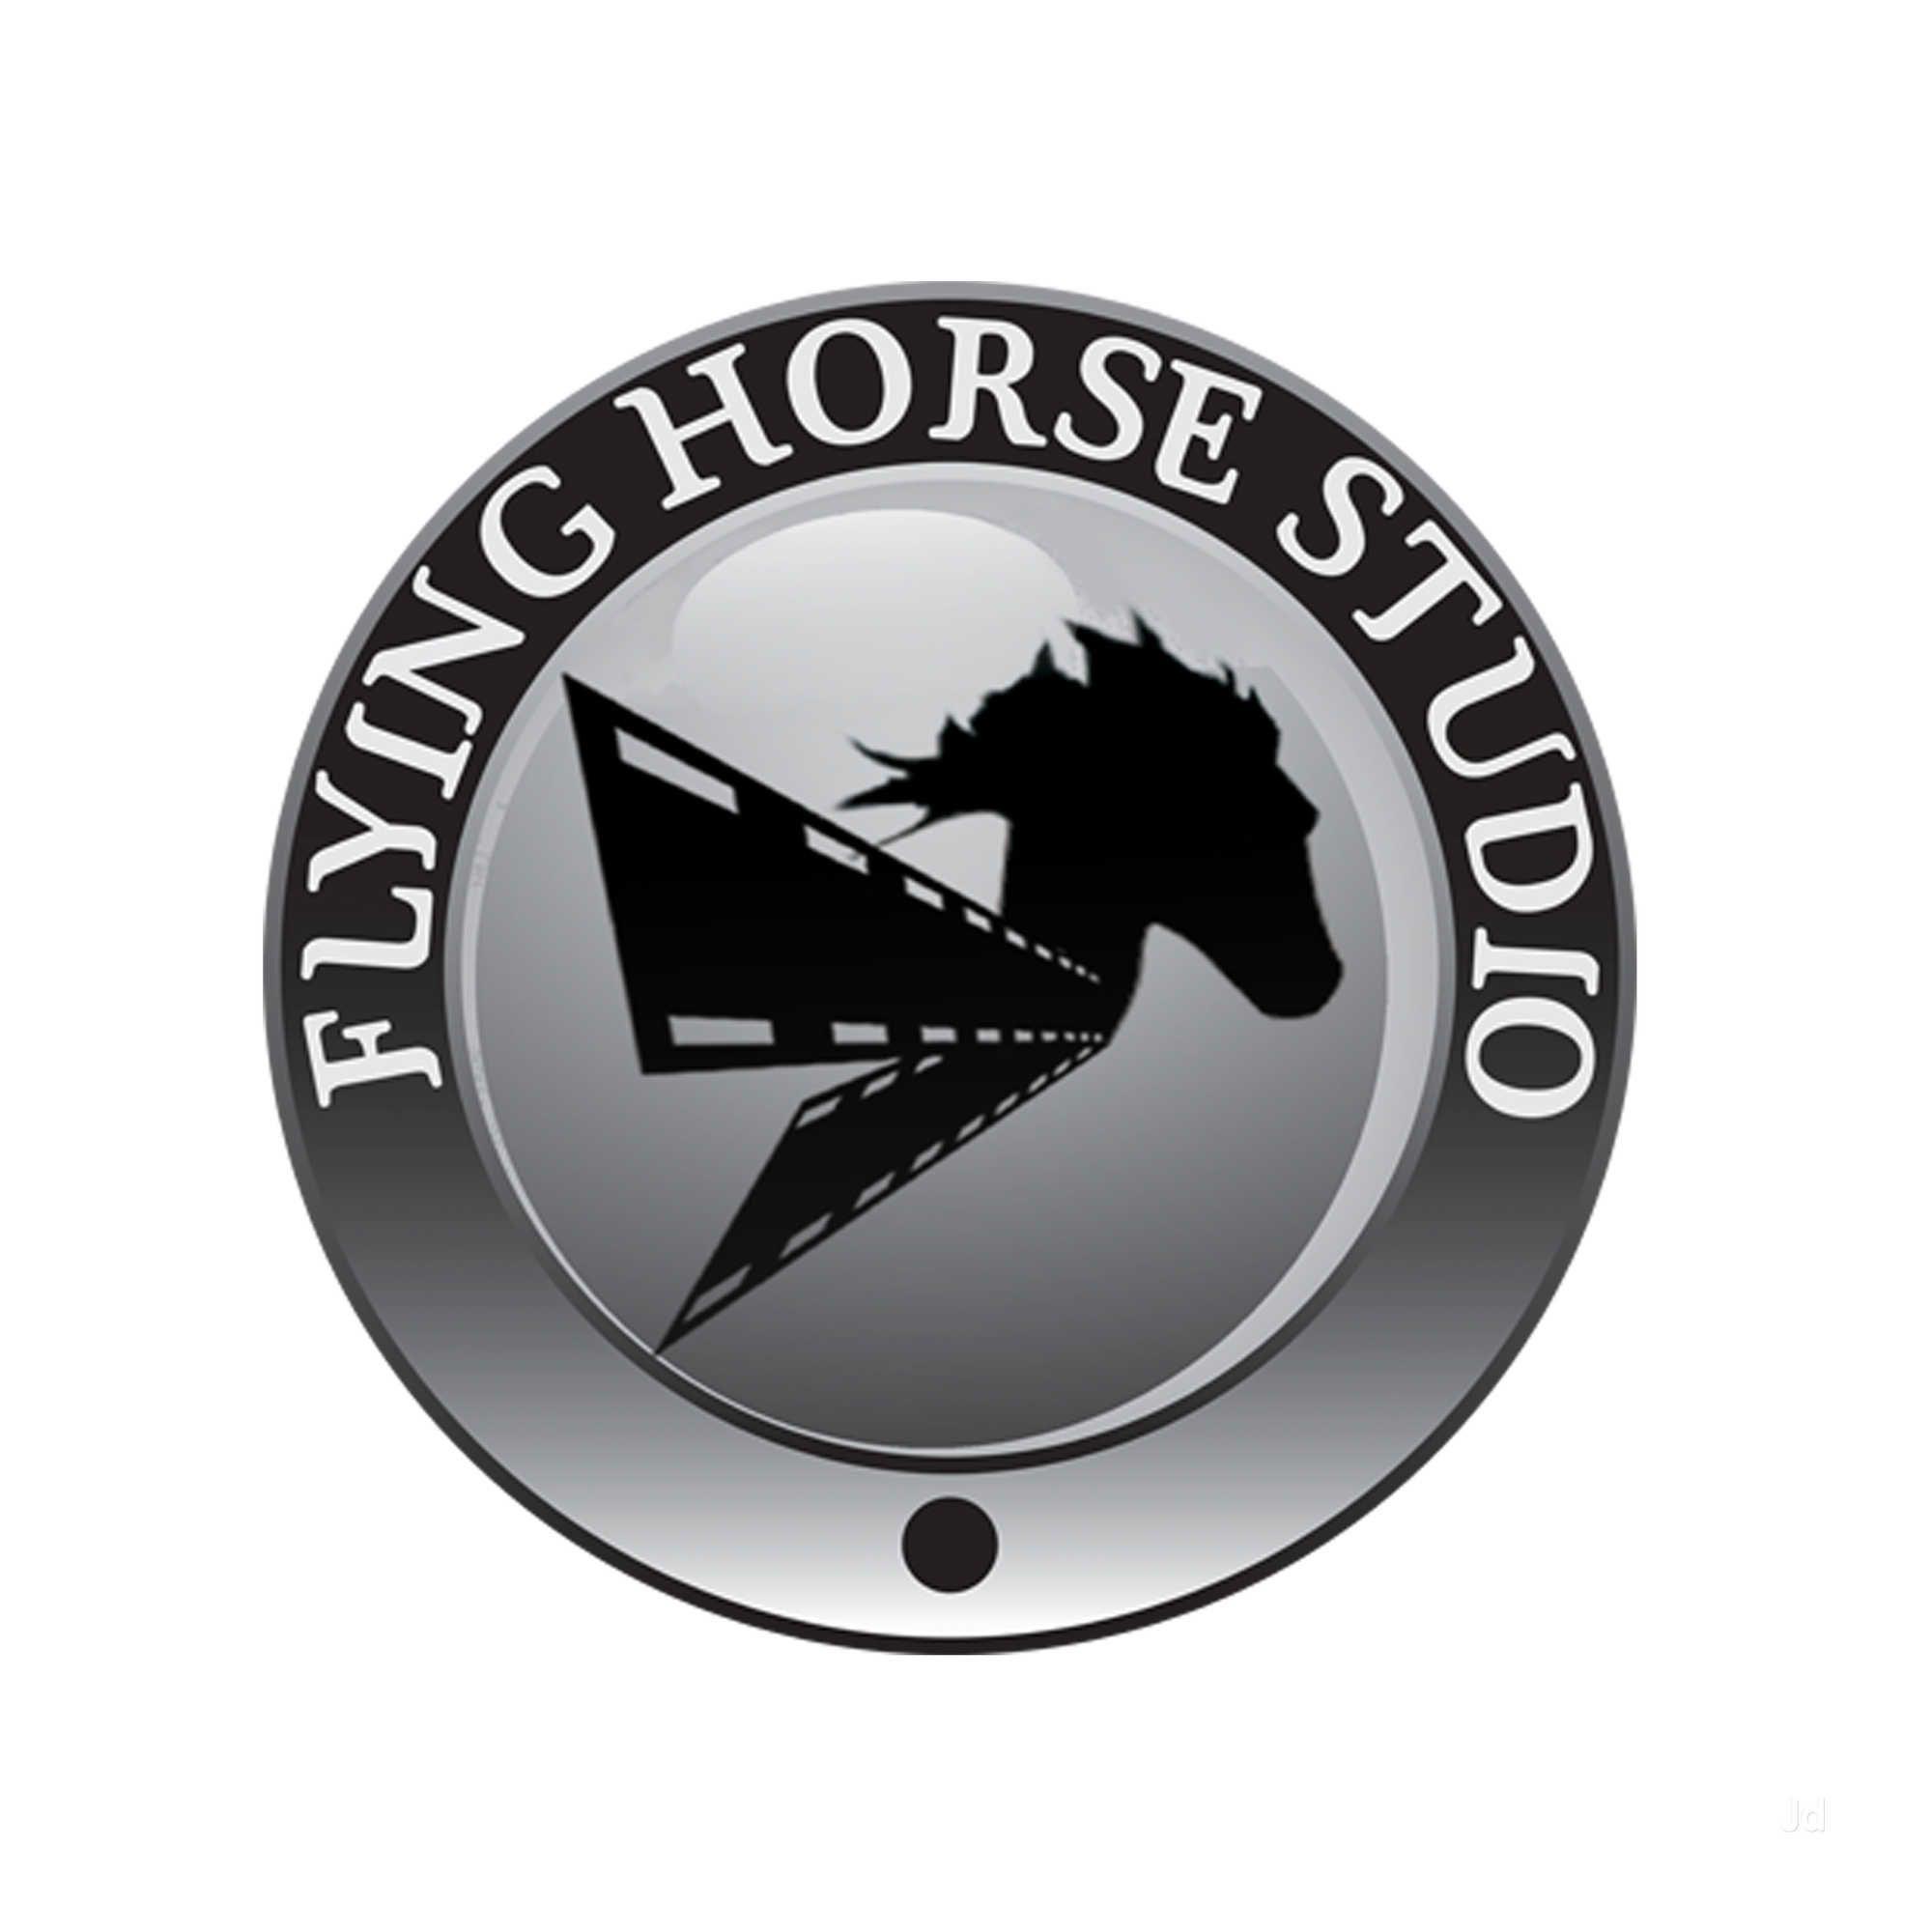 Flying Horse in Circle Logo - Flying Horse Studio Photo, Goregaon West, Mumbai- Picture & Image